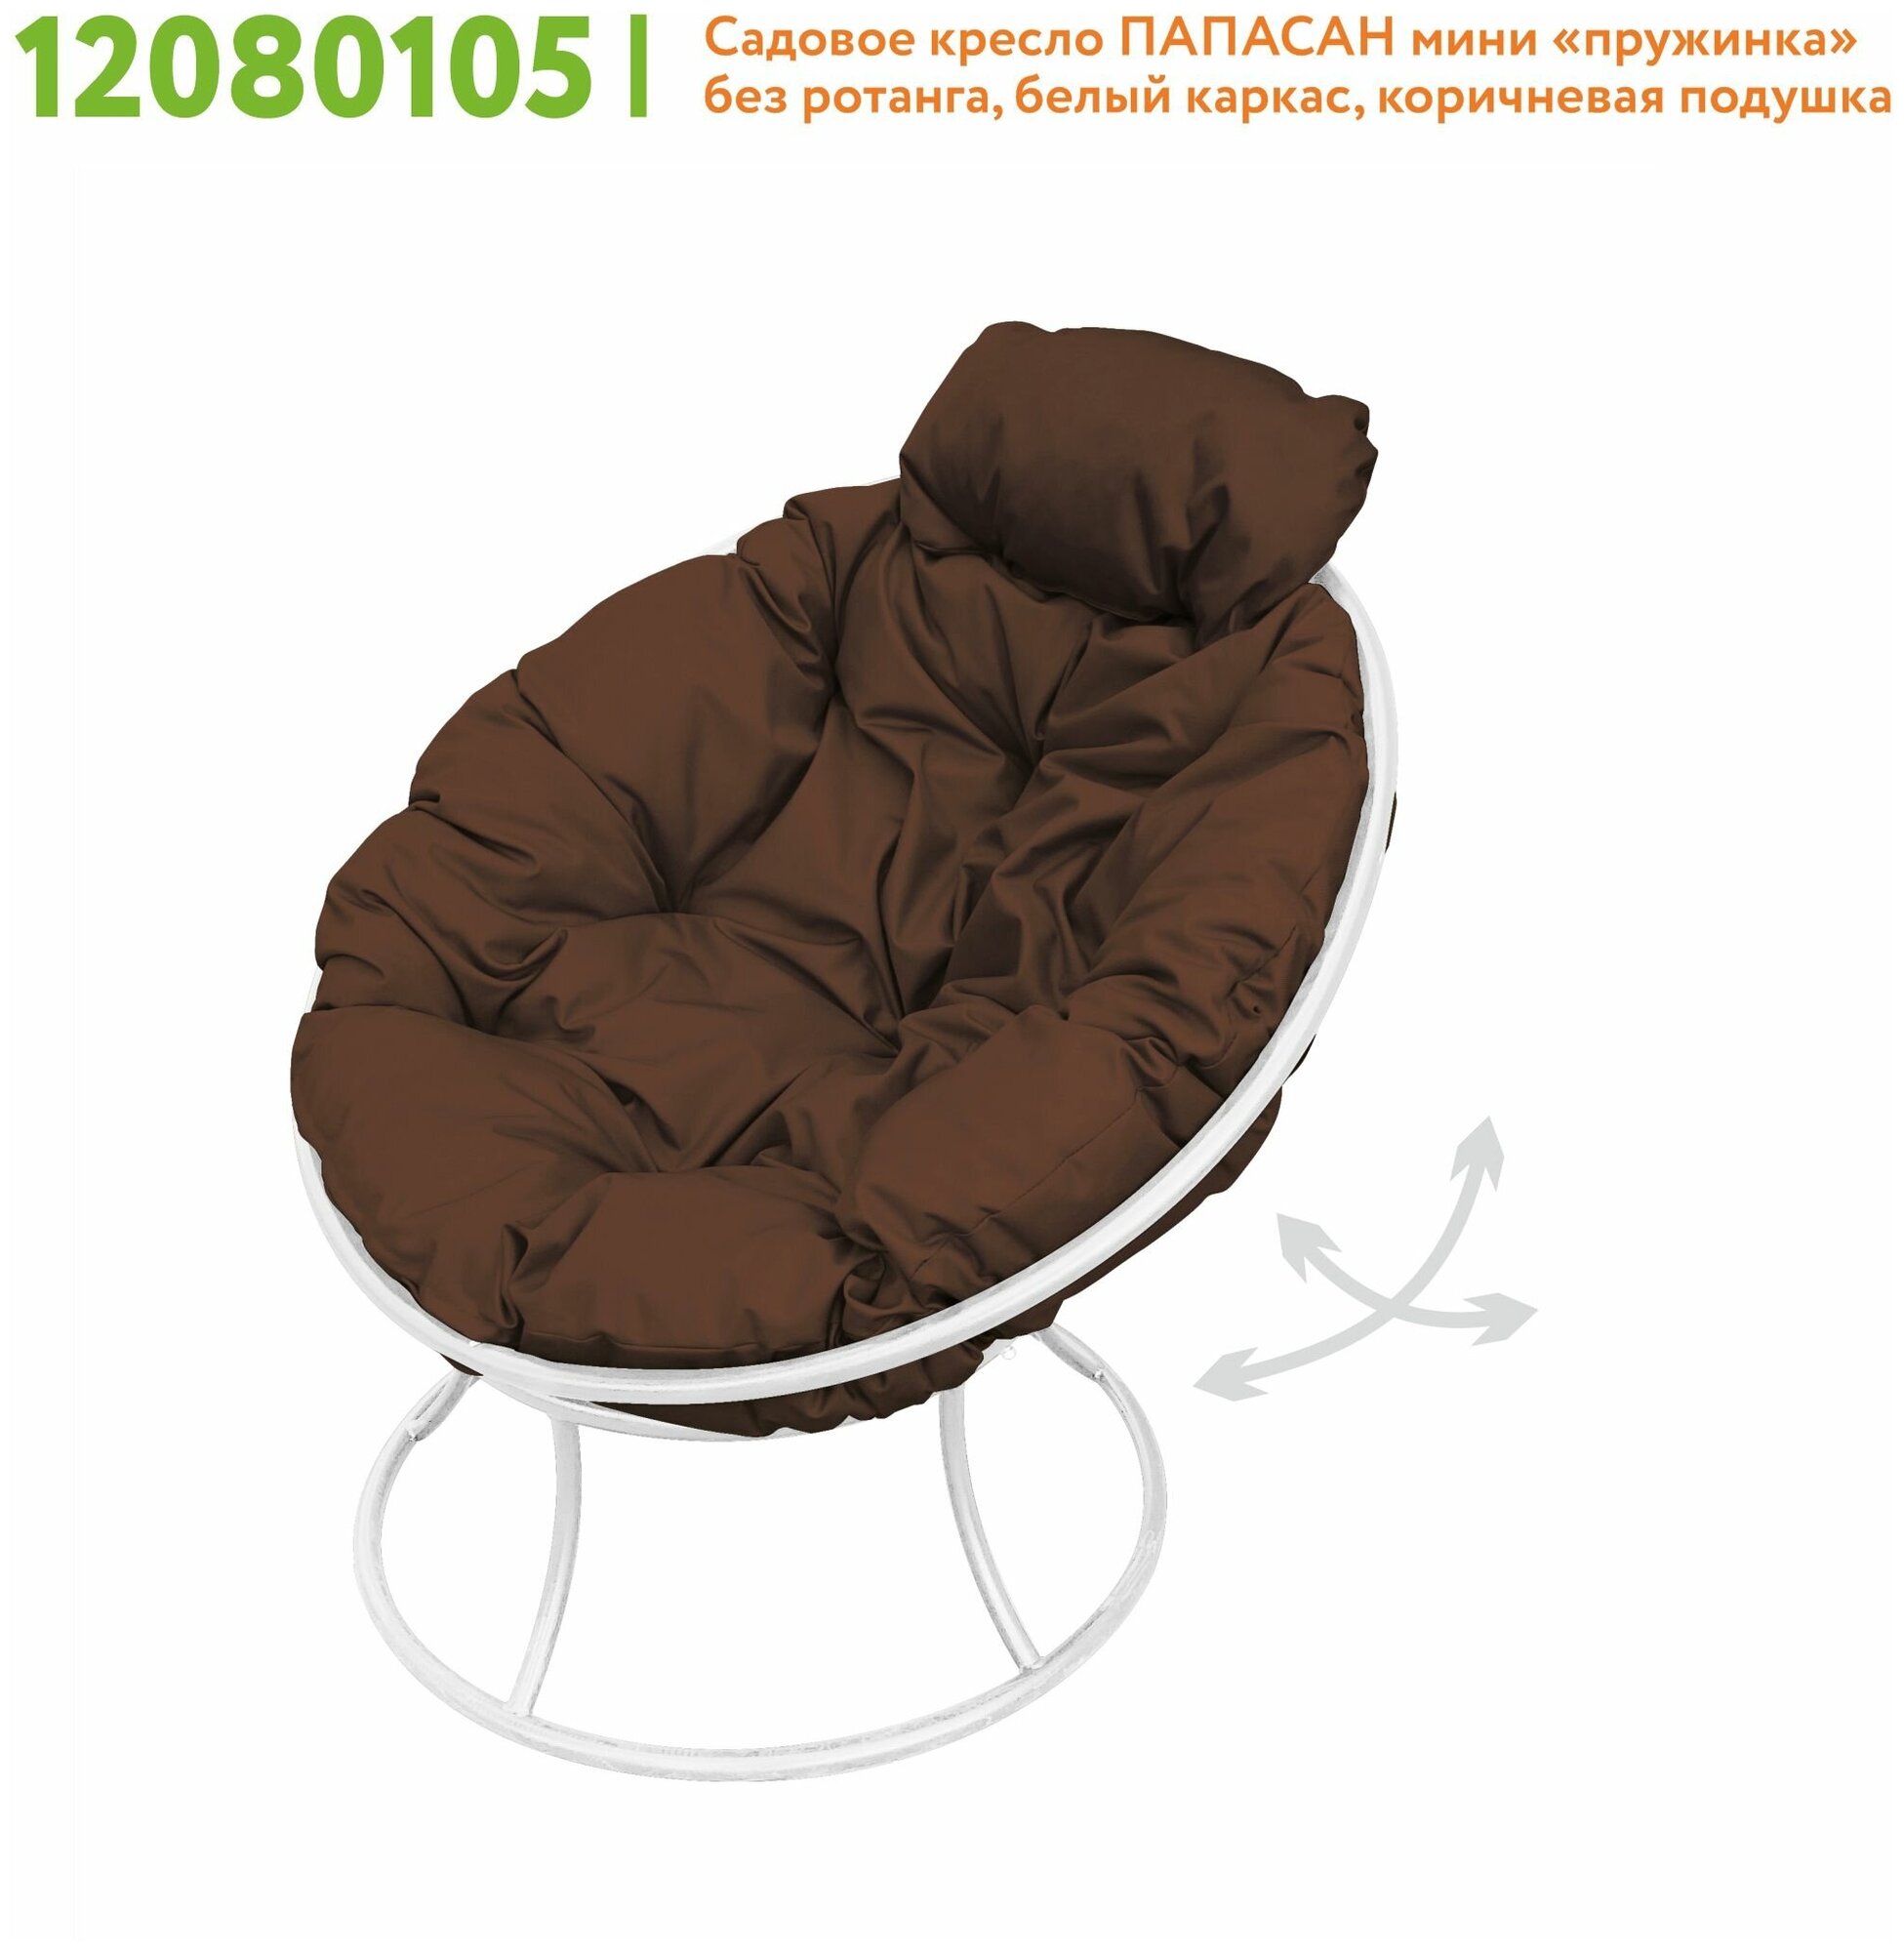 Кресло m-group папасан пружинка мини белое, коричневая подушка - фотография № 6